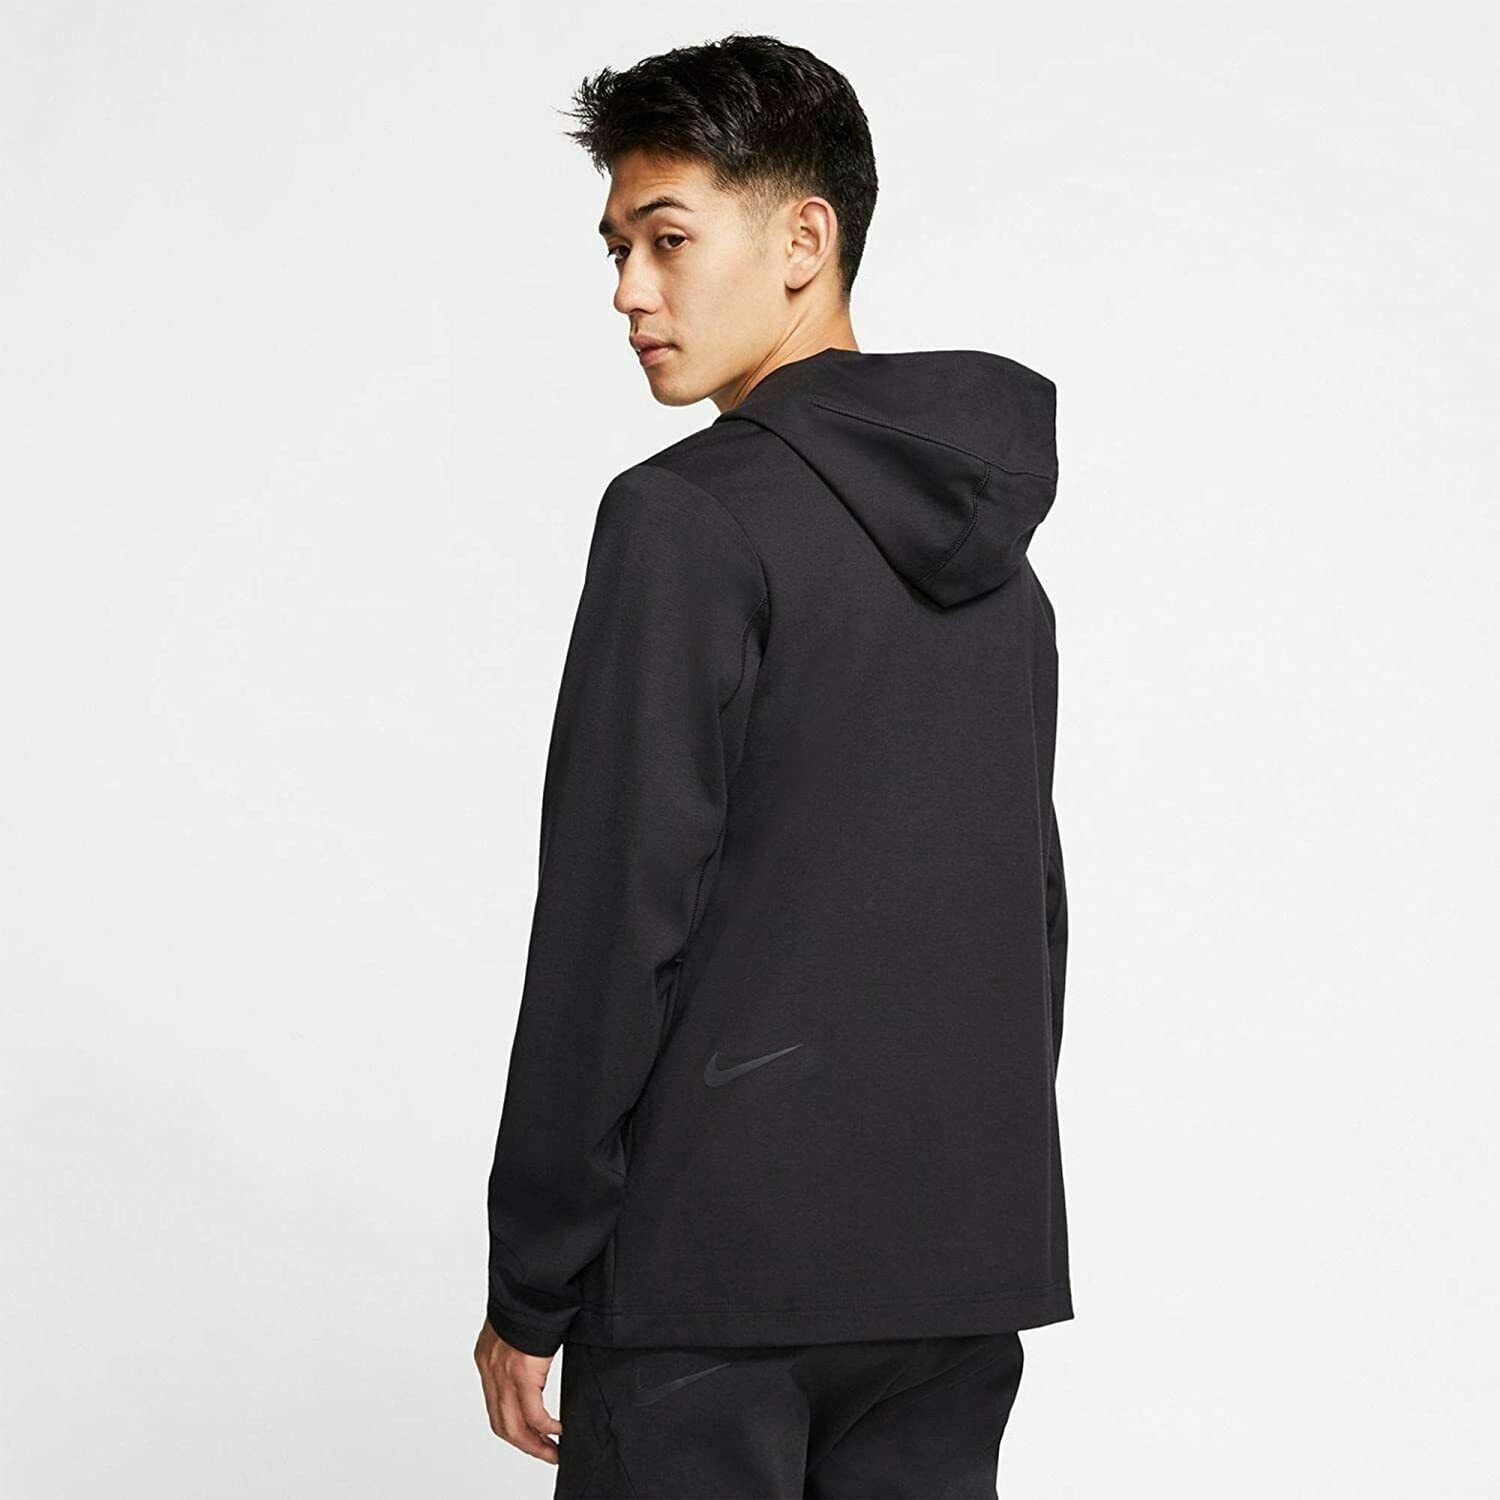 Nike Sportswear Tech Pack Men's Hooded Full-Zip Jacket (Black) Size XL - image 3 of 4